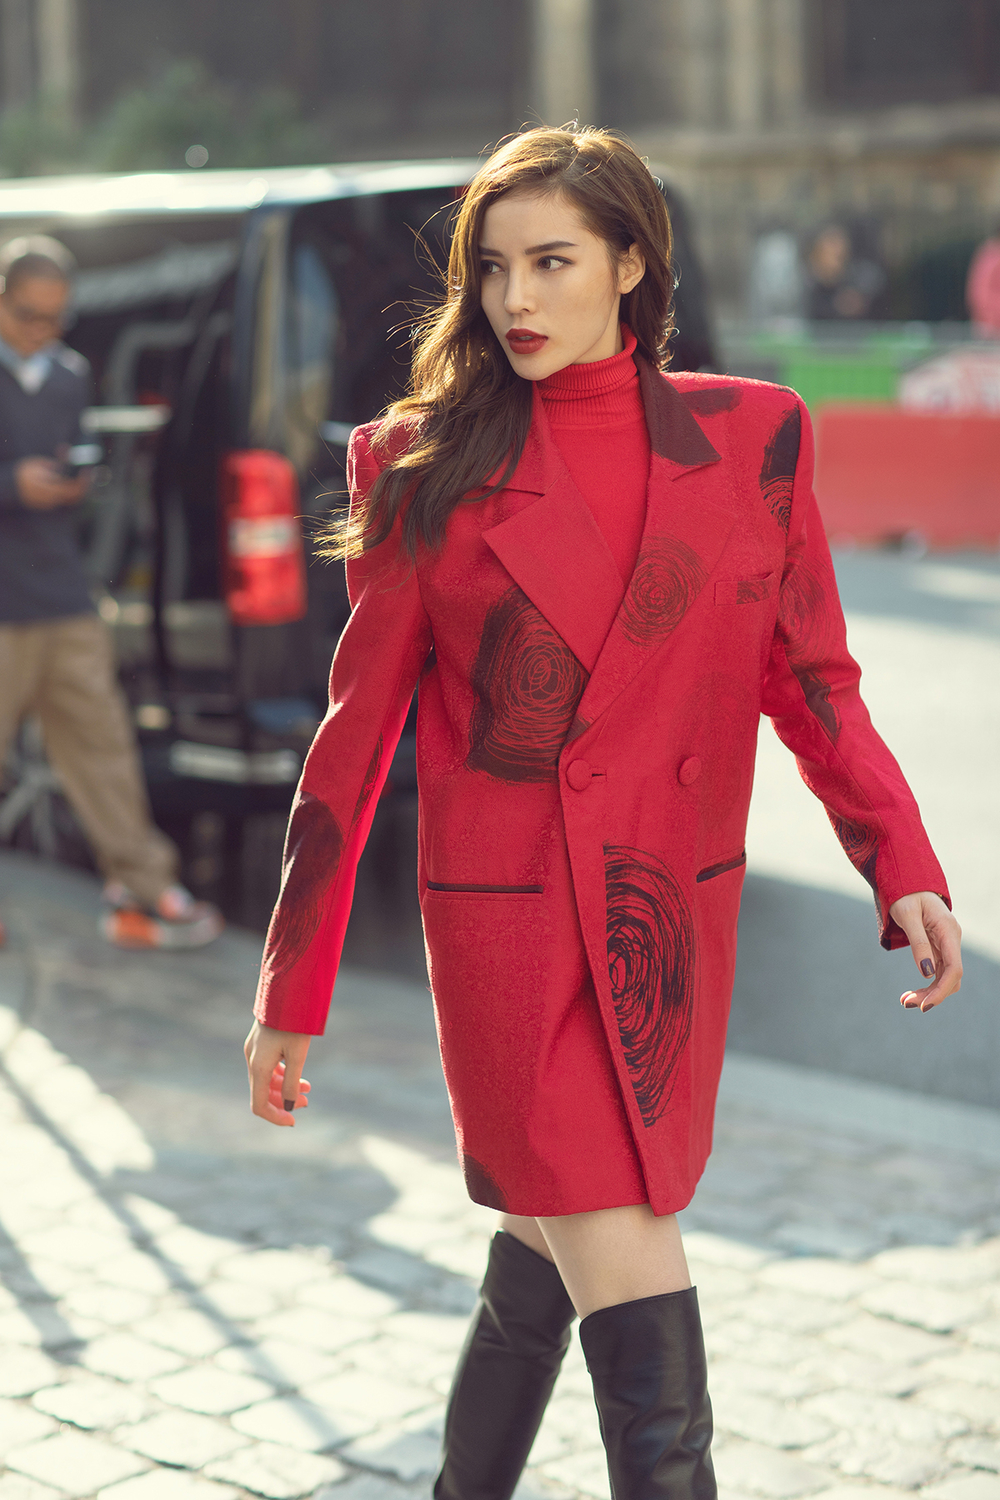 
Bộ suits tông màu đỏ in hoạ tiết Domino giúp Kỳ Duyên trở thành điểm nhấn nổi bật trên những con phố của trung tâm thời trang Paris. 